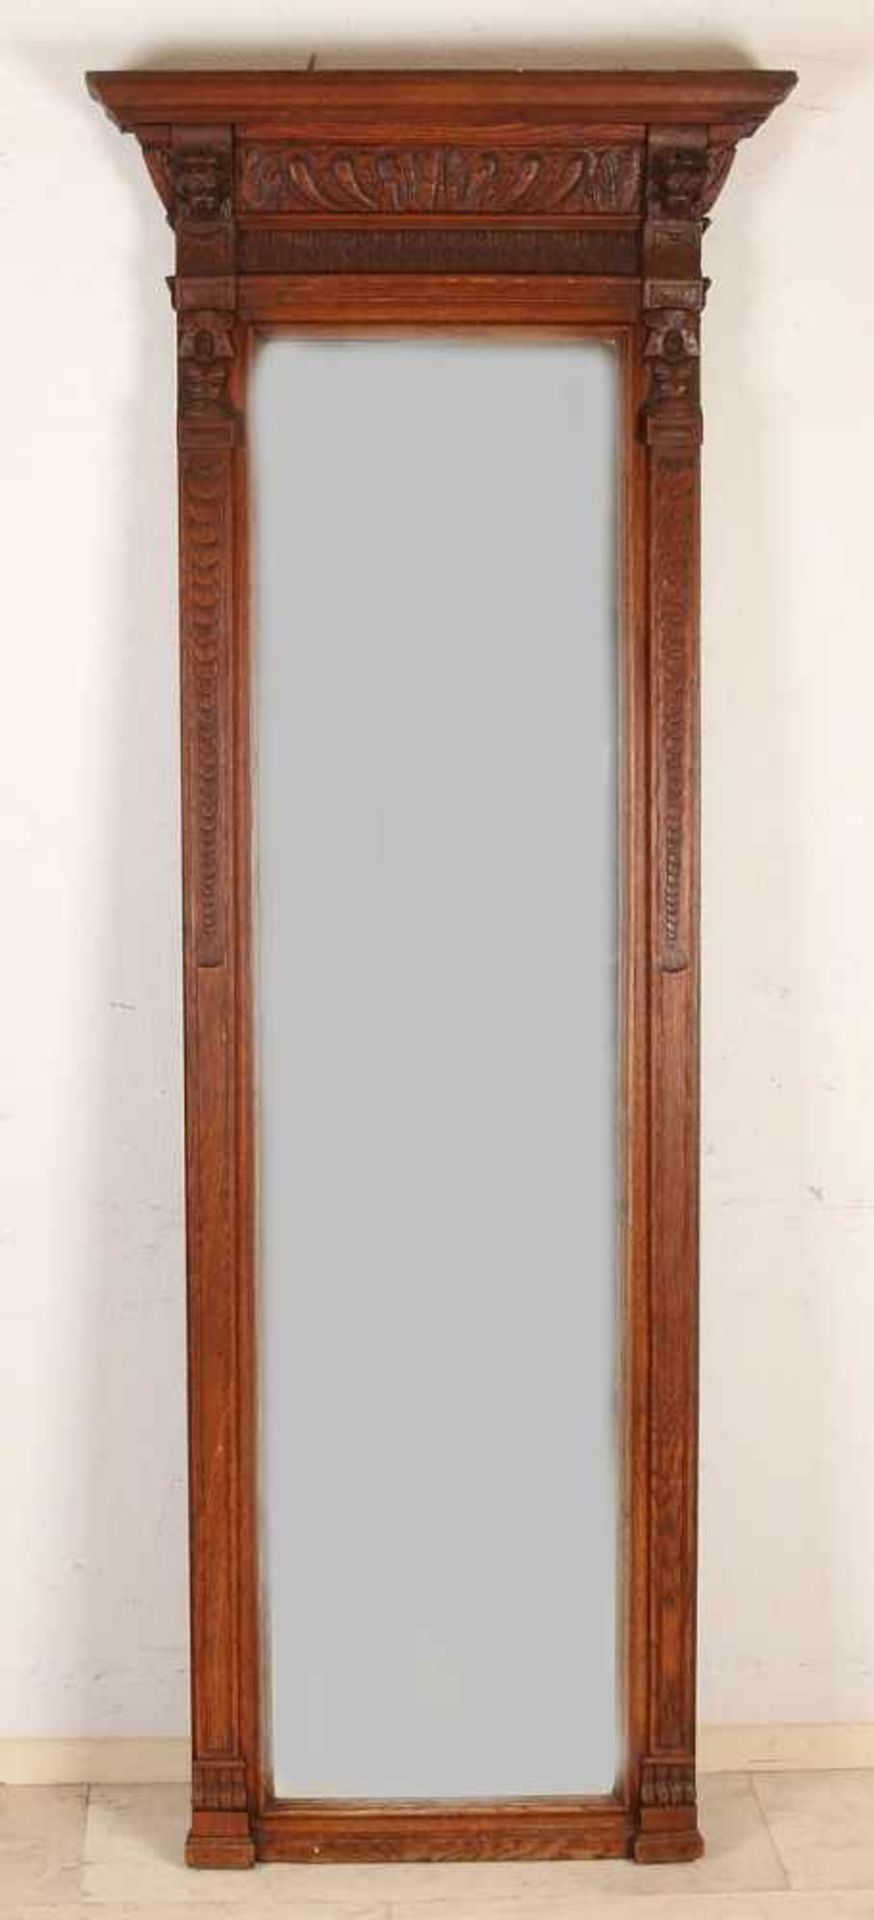 Großer antiker Mechelen-Halsspiegel aus Eichenholz mit Löwenköpfen. Abmessungen: H 201 x B 77 cm. In